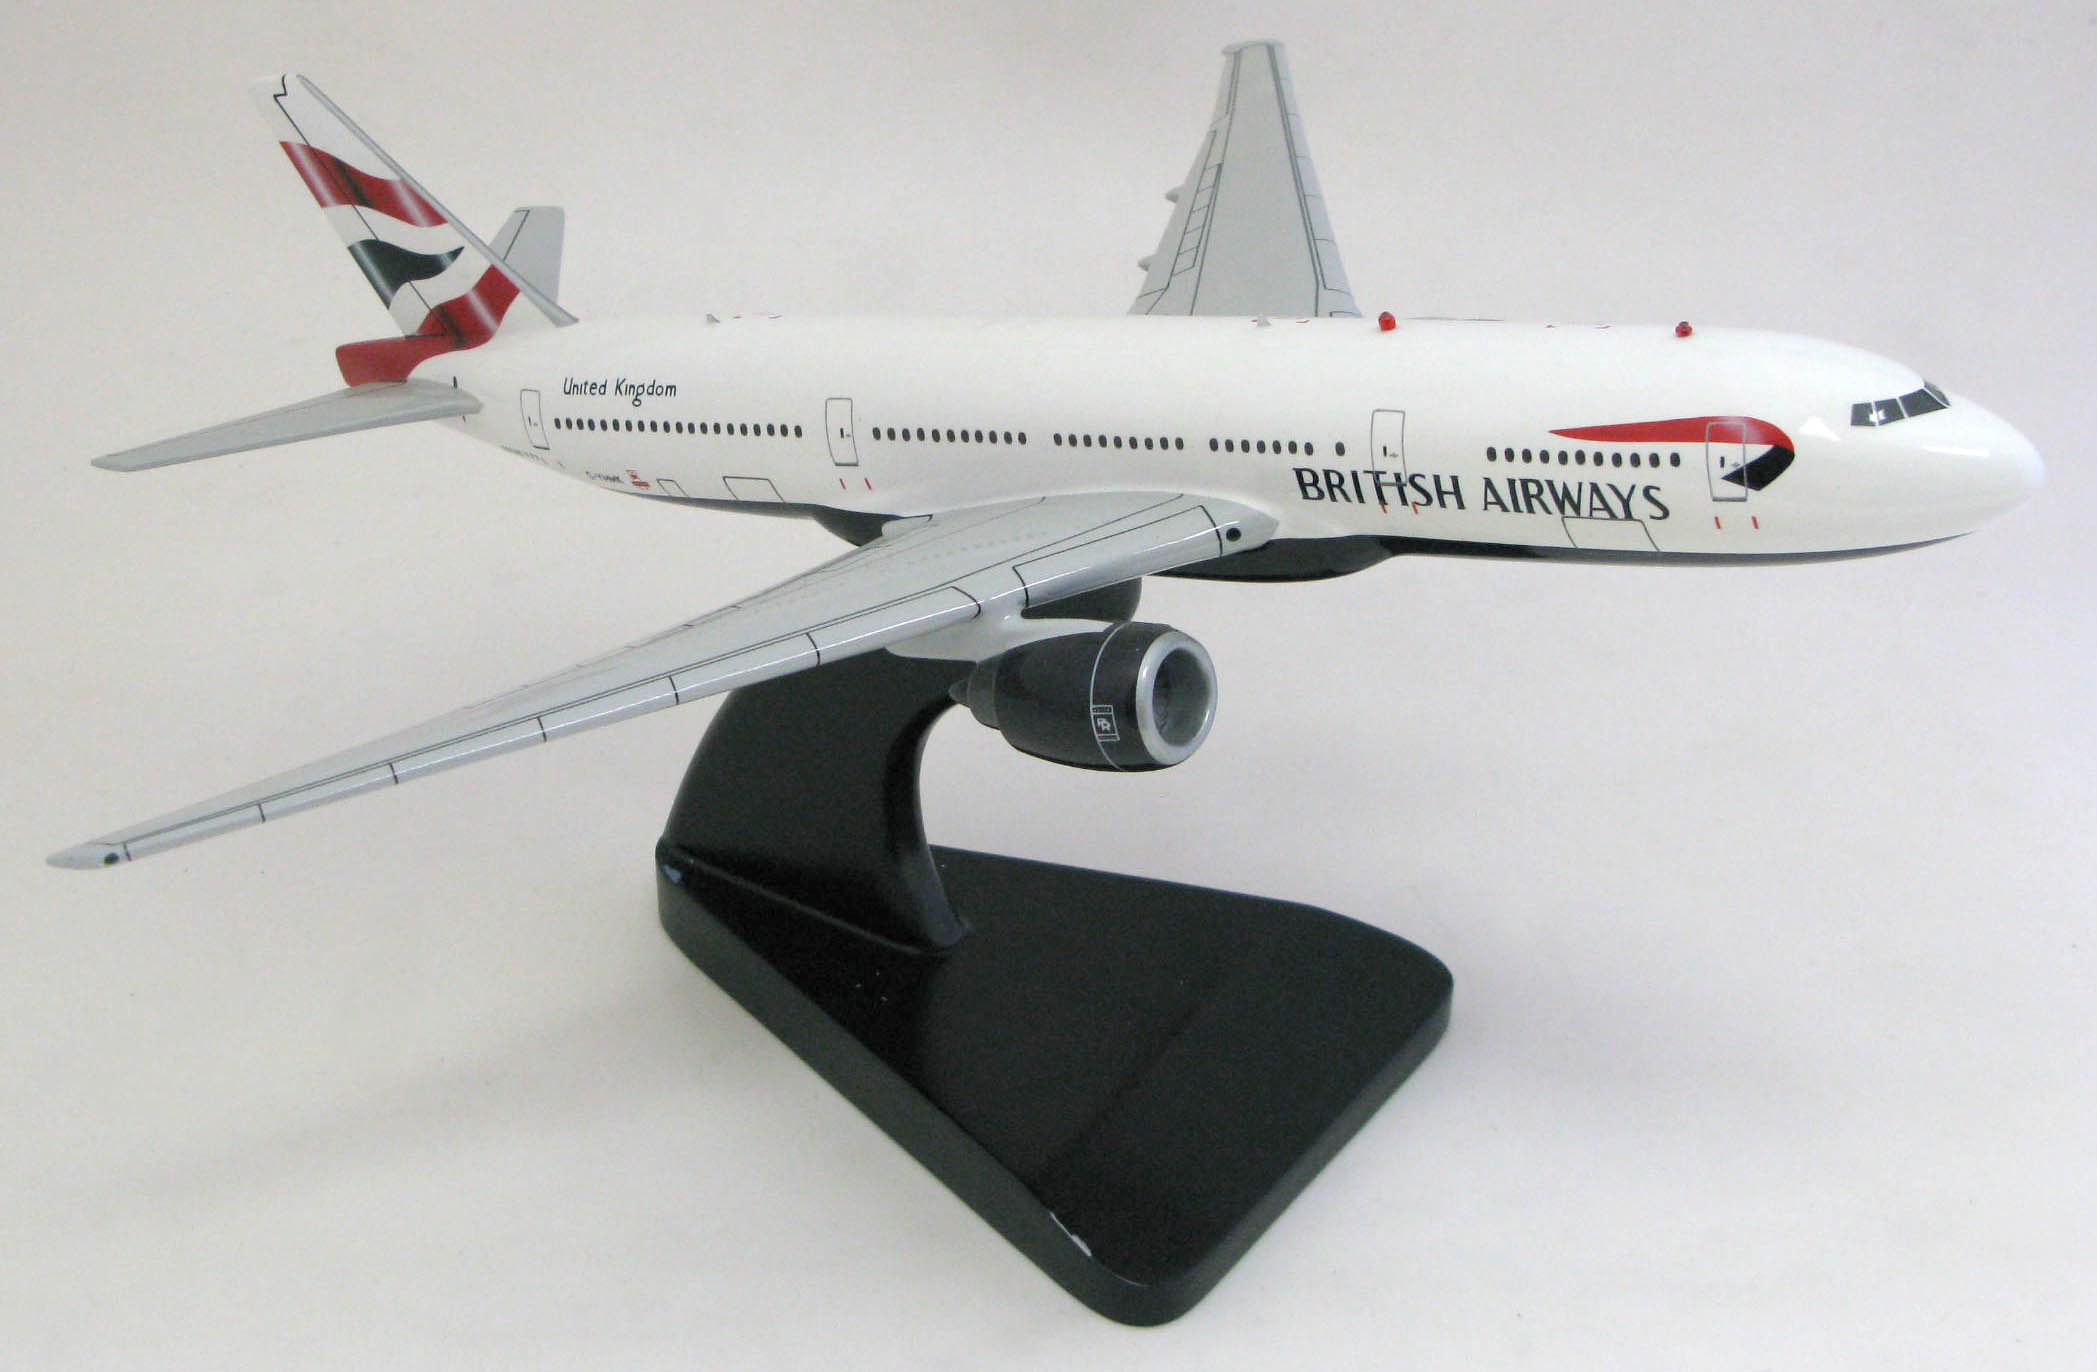 Boeing 777 model in British Airways livery